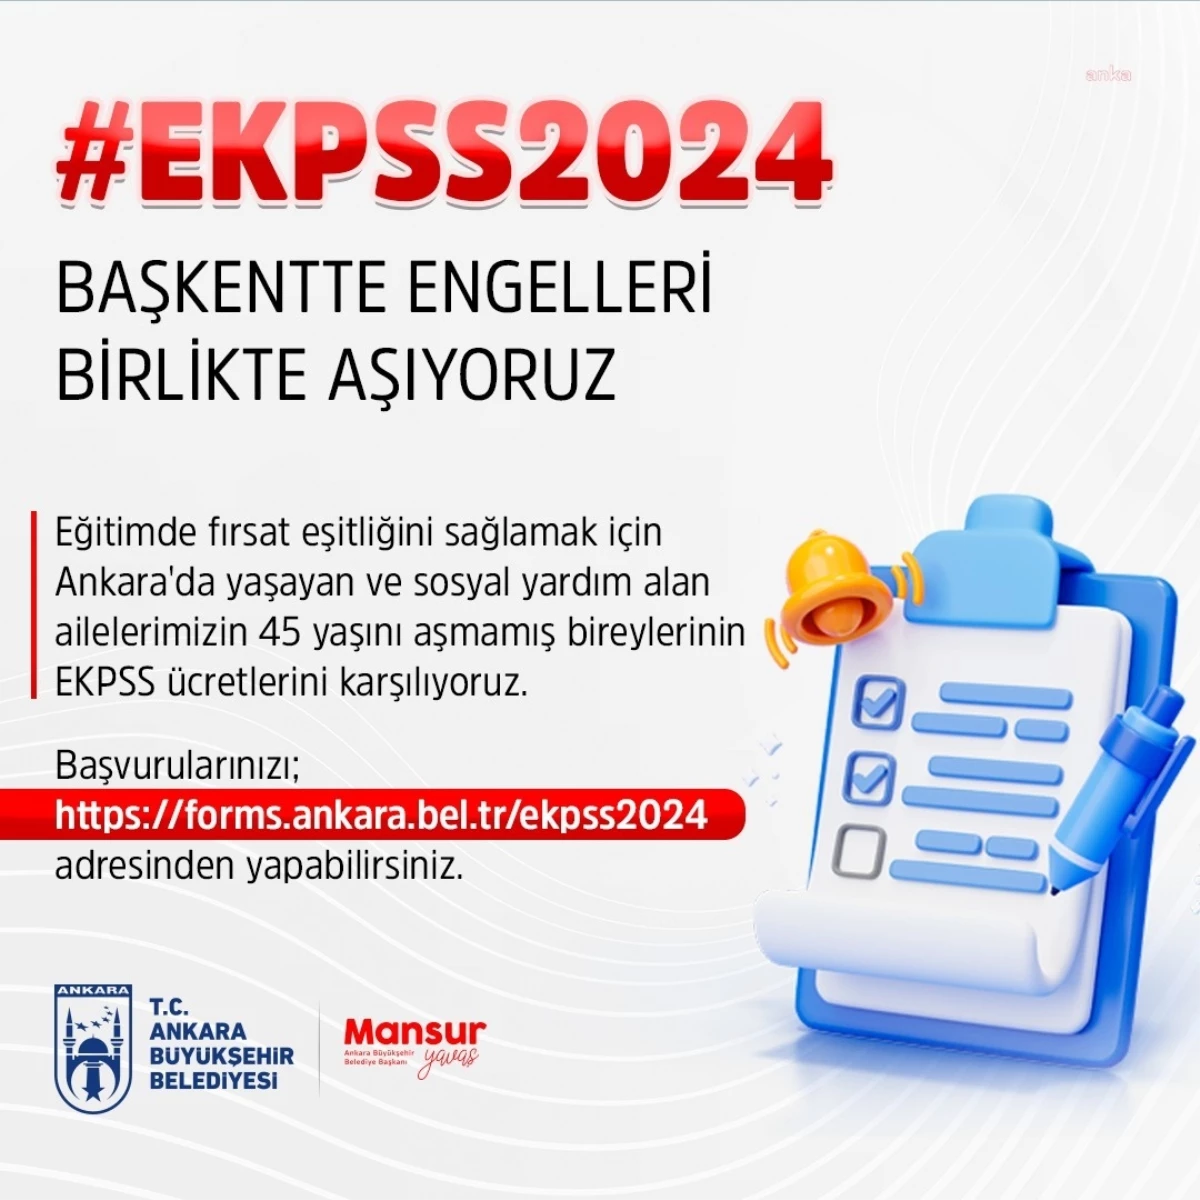 Ankara Büyükşehir Belediyesi Engelli Bireylerin EKPSS Ücretlerini Karşılıyor